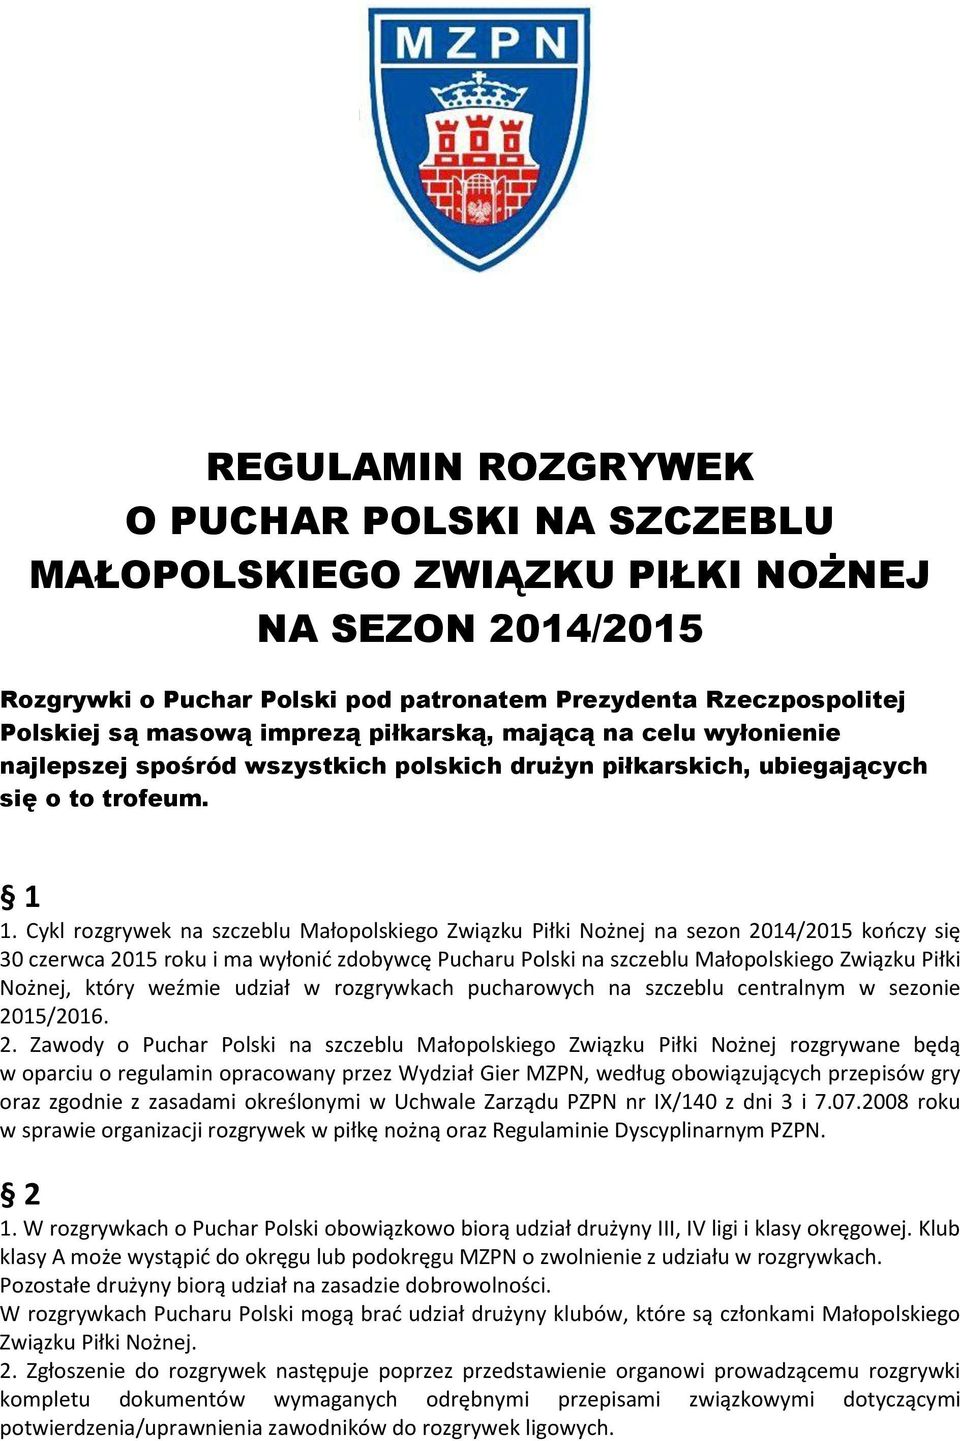 Cykl rozgrywek na szczeblu Małopolskiego Związku Piłki Nożnej na sezon 2014/2015 kończy się 30 czerwca 2015 roku i ma wyłonić zdobywcę Pucharu Polski na szczeblu Małopolskiego Związku Piłki Nożnej,